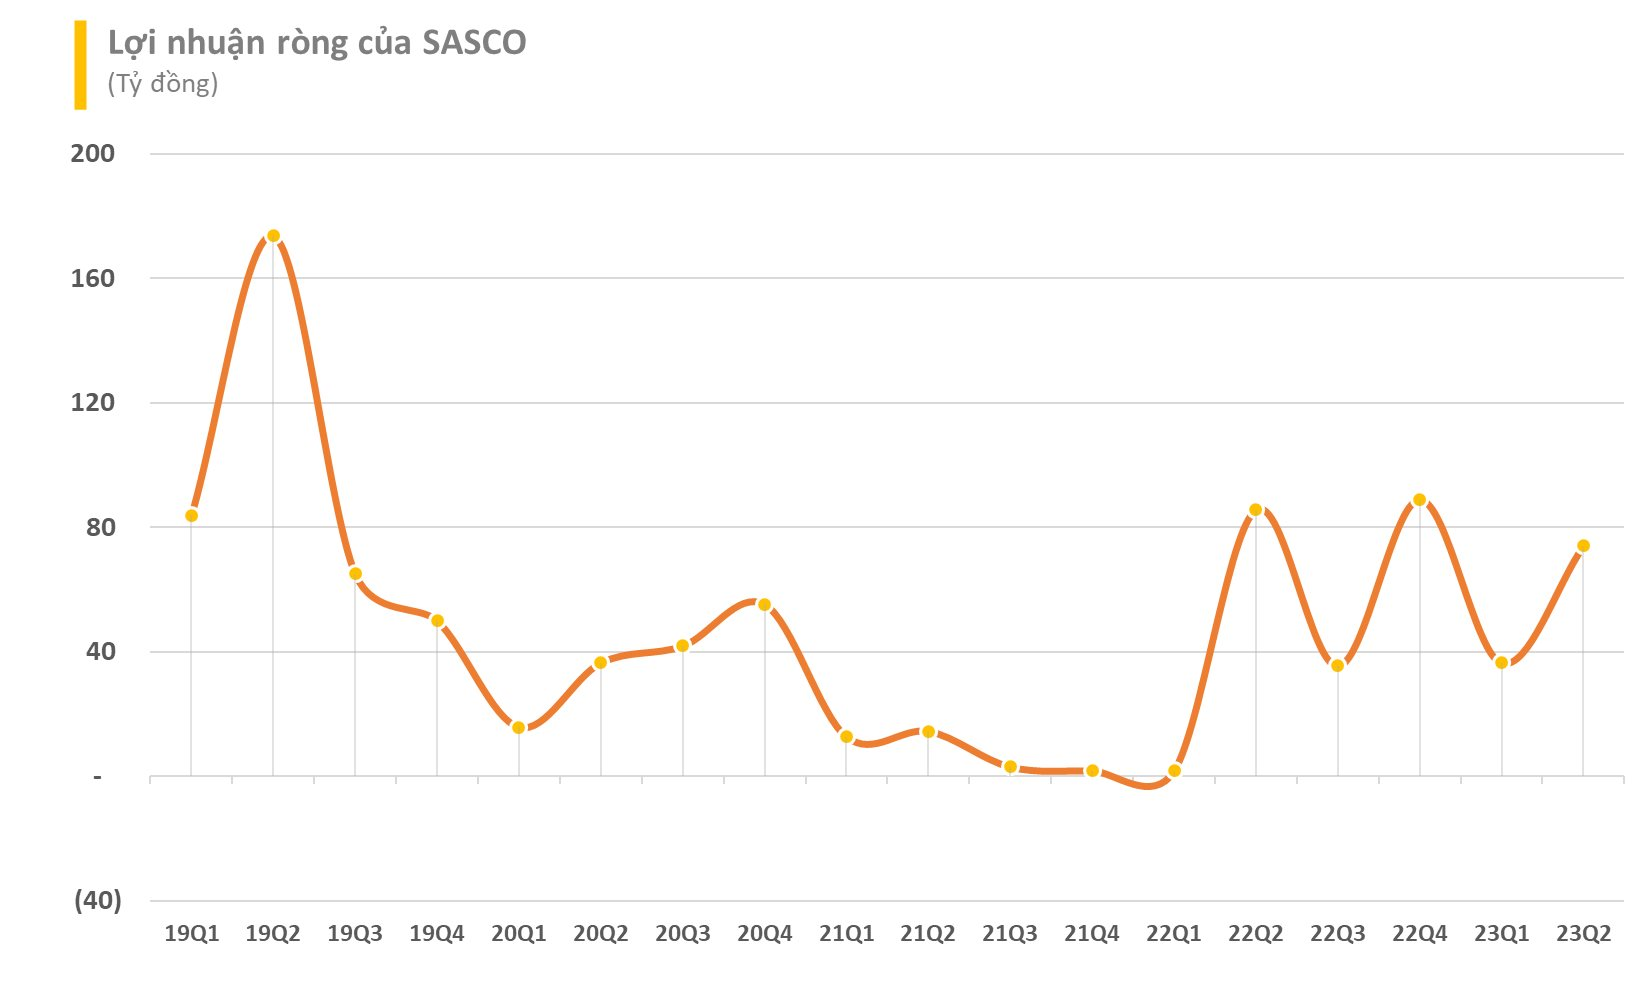 Sasco của 'vua hàng hiệu' Johnathan Hạnh Nguyễn báo lãi quý 2 sụt giảm dù doanh thu cao gấp đôi cùng kỳ năm trước - Ảnh 1.